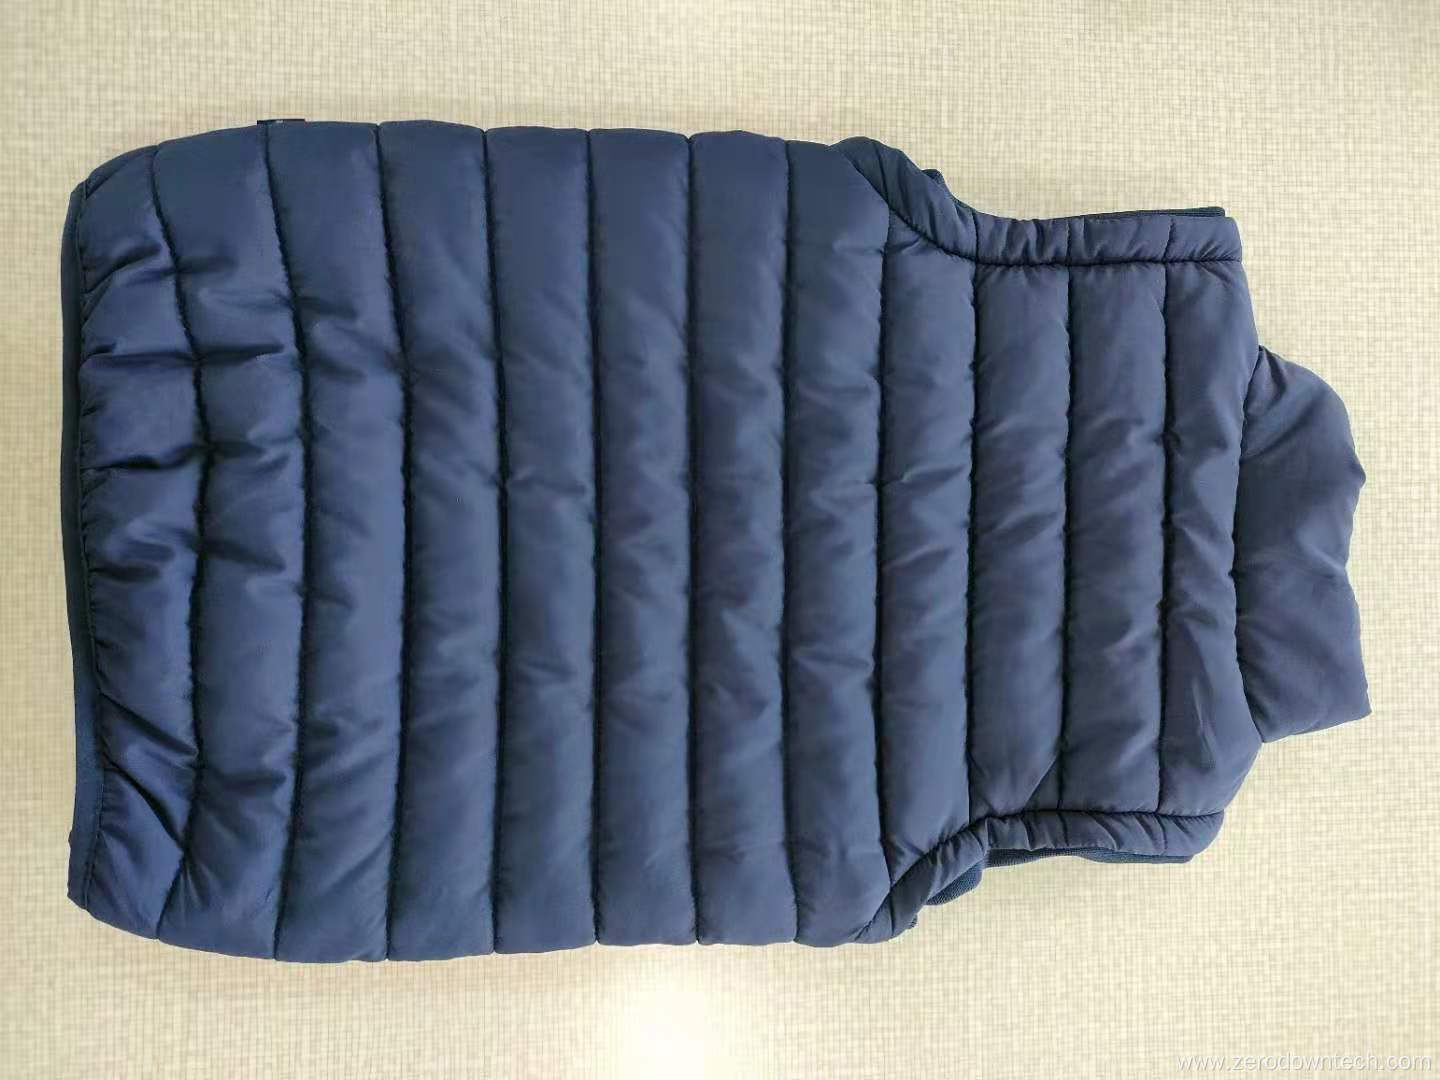 Wholesale men's winter fashion portable down vest